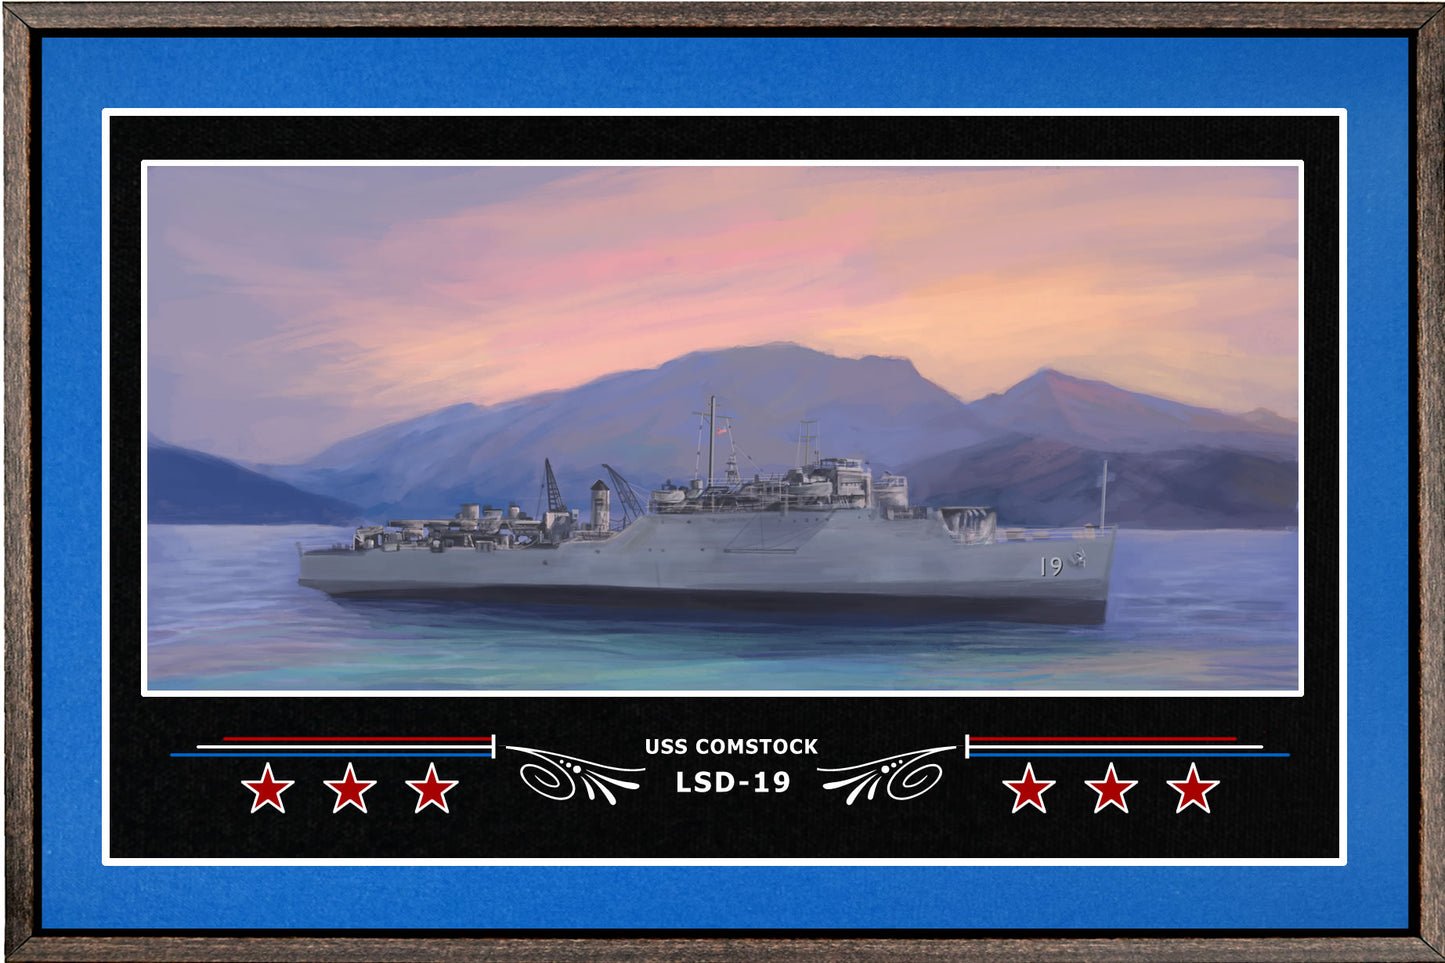 USS COMSTOCK LSD 19 BOX FRAMED CANVAS ART BLUE